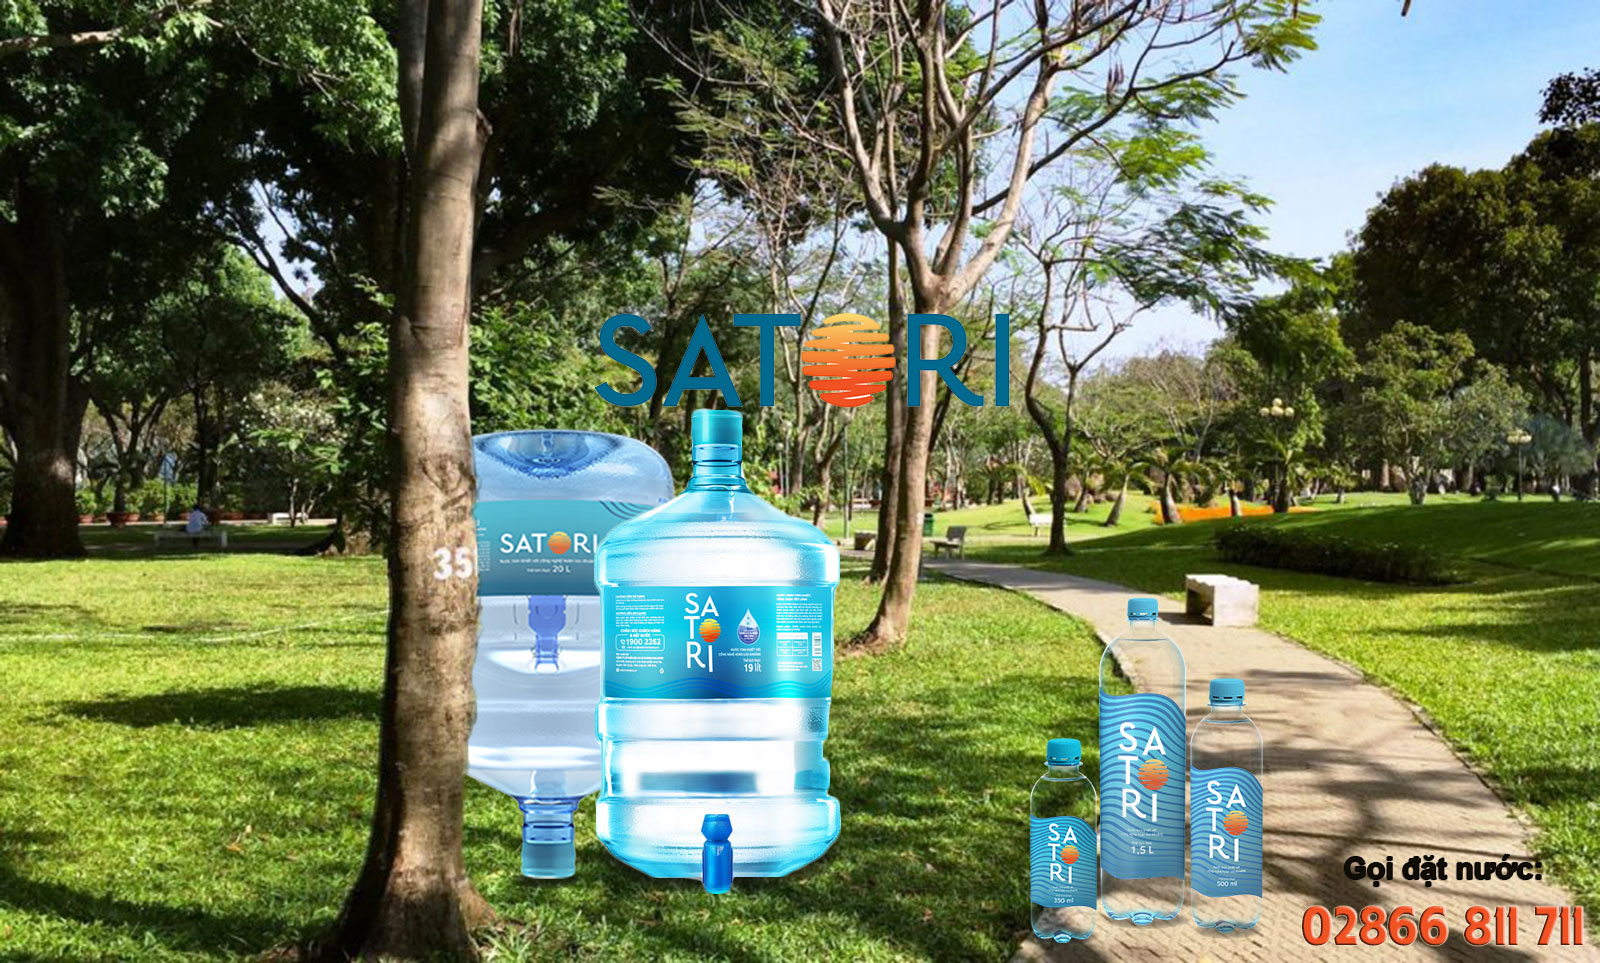 Đại lý nước uống Satori quận Phú Nhuận, Giao nước Phú Nhuận tốc độ nhanh